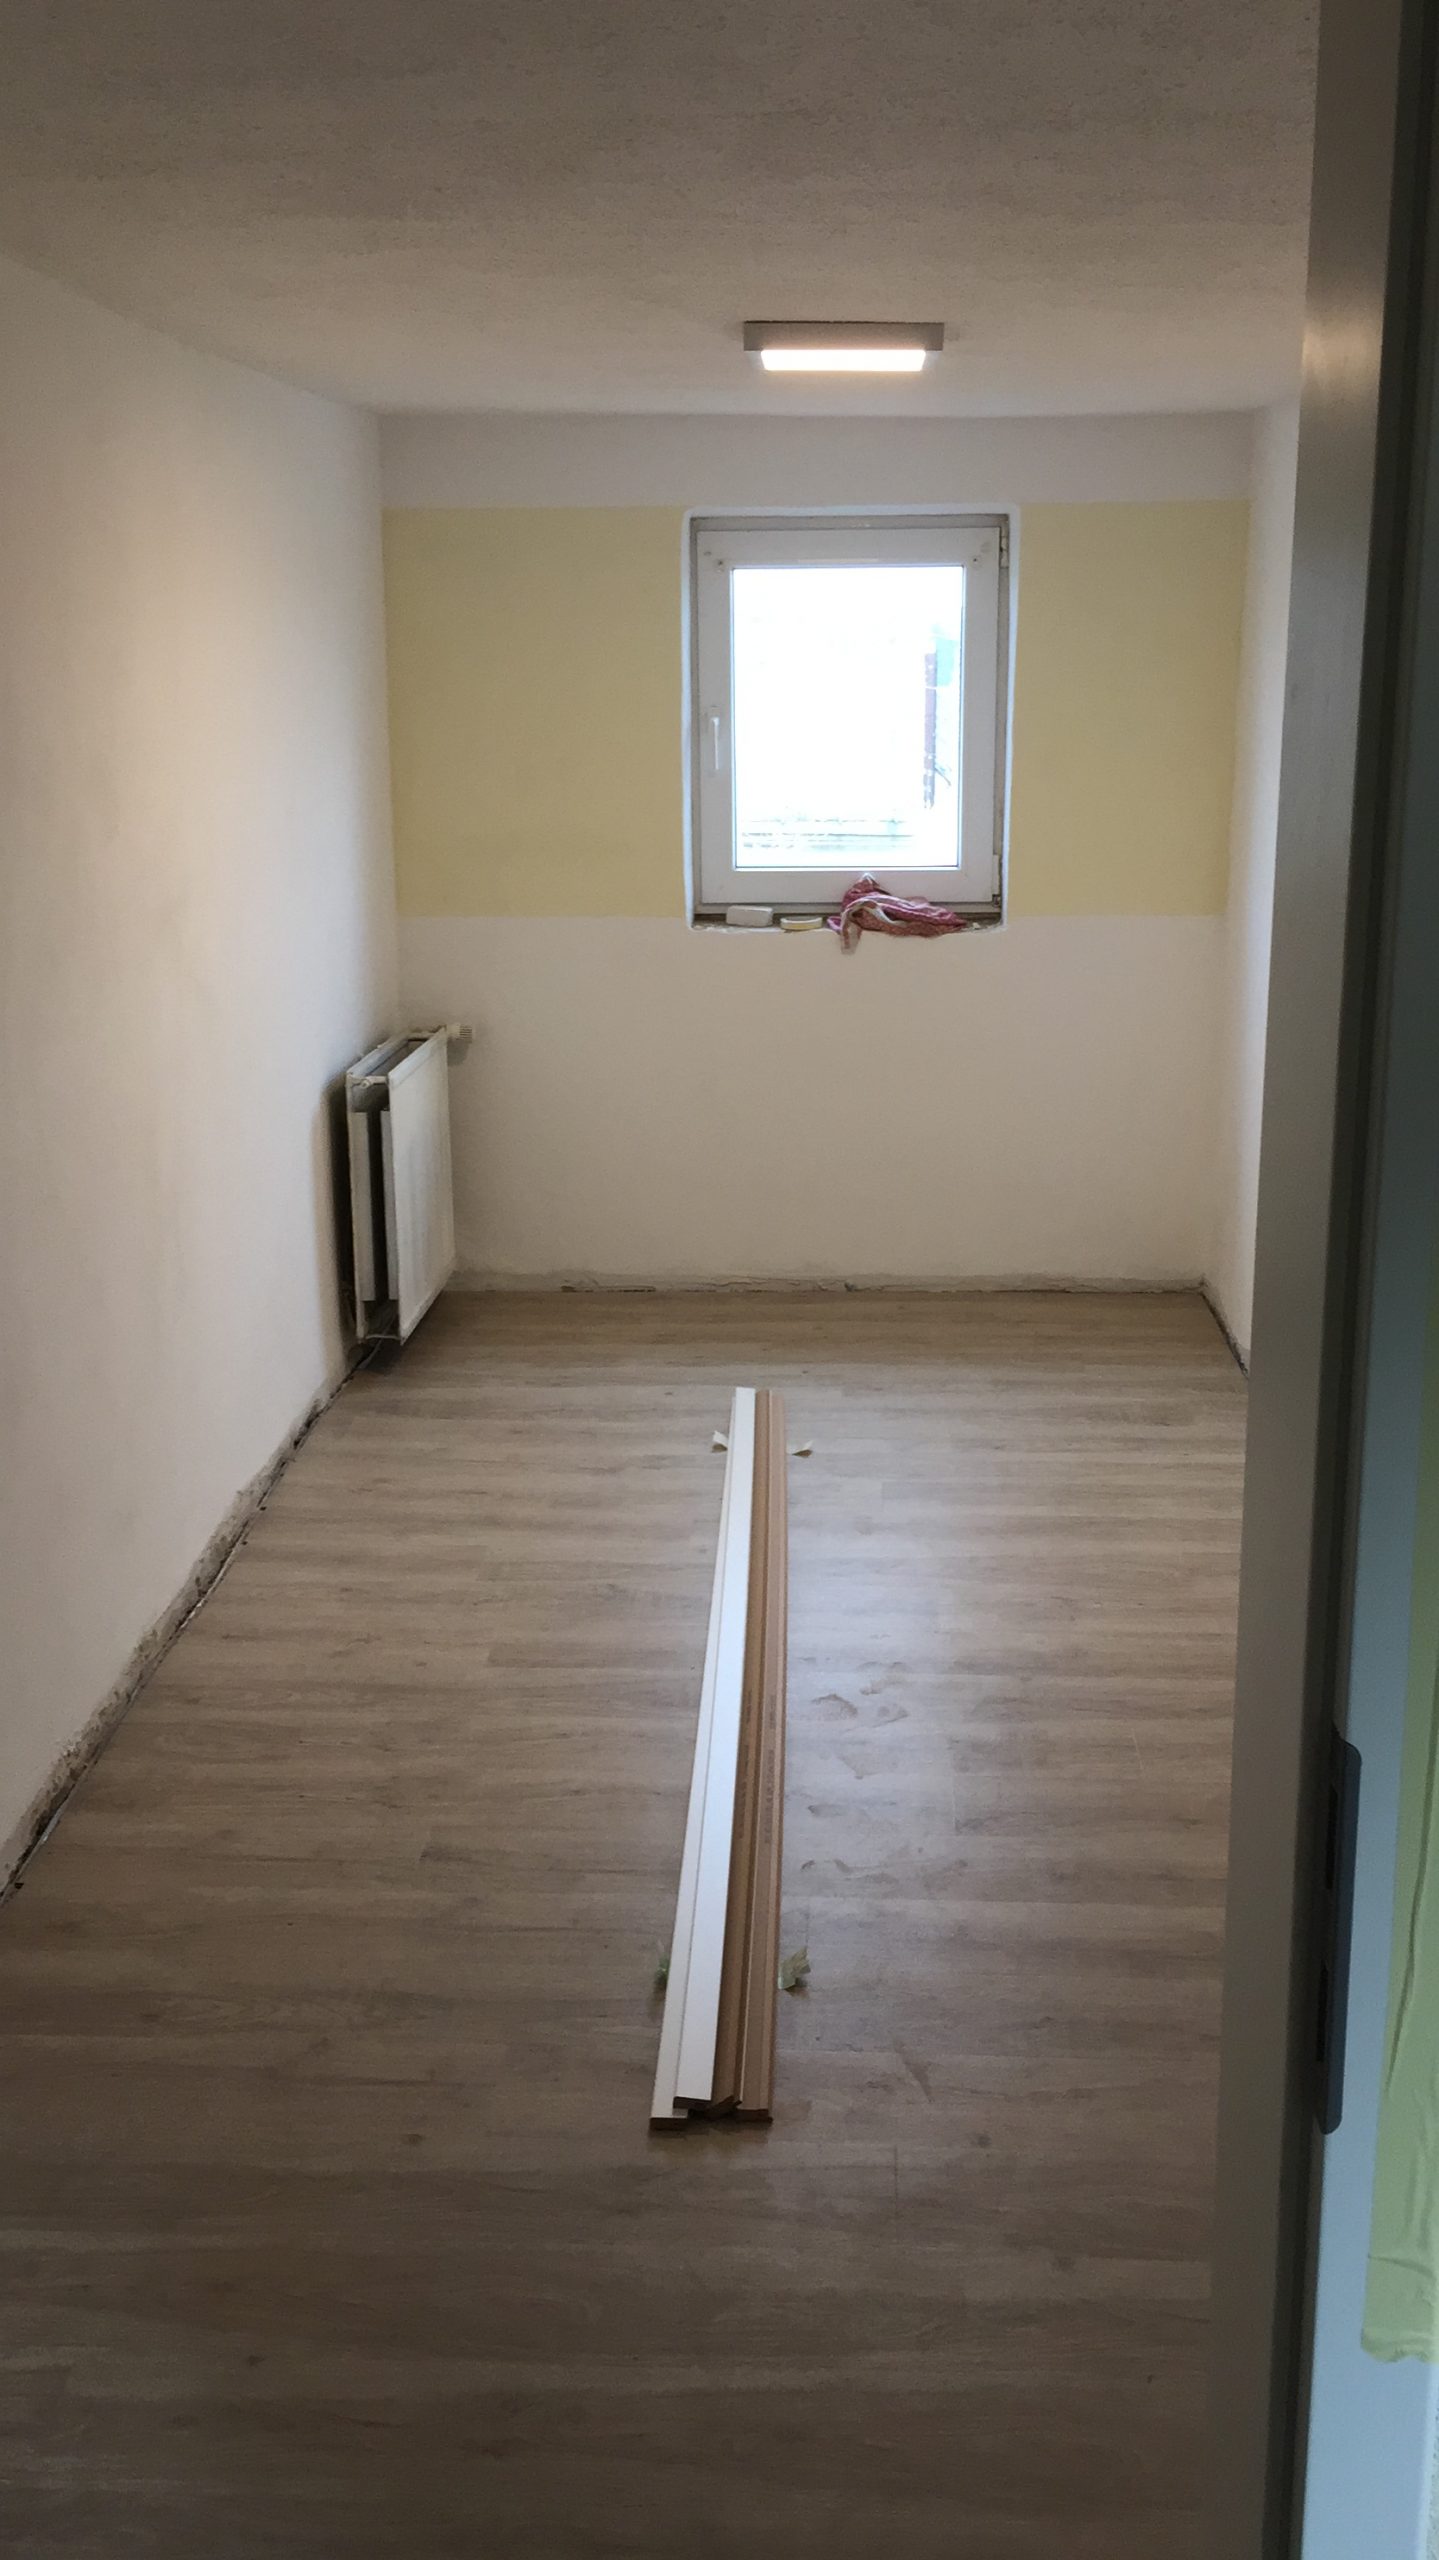  Projekt: Kleinere Sanierungsarbeiten im bewohnten Zustand in Greiz